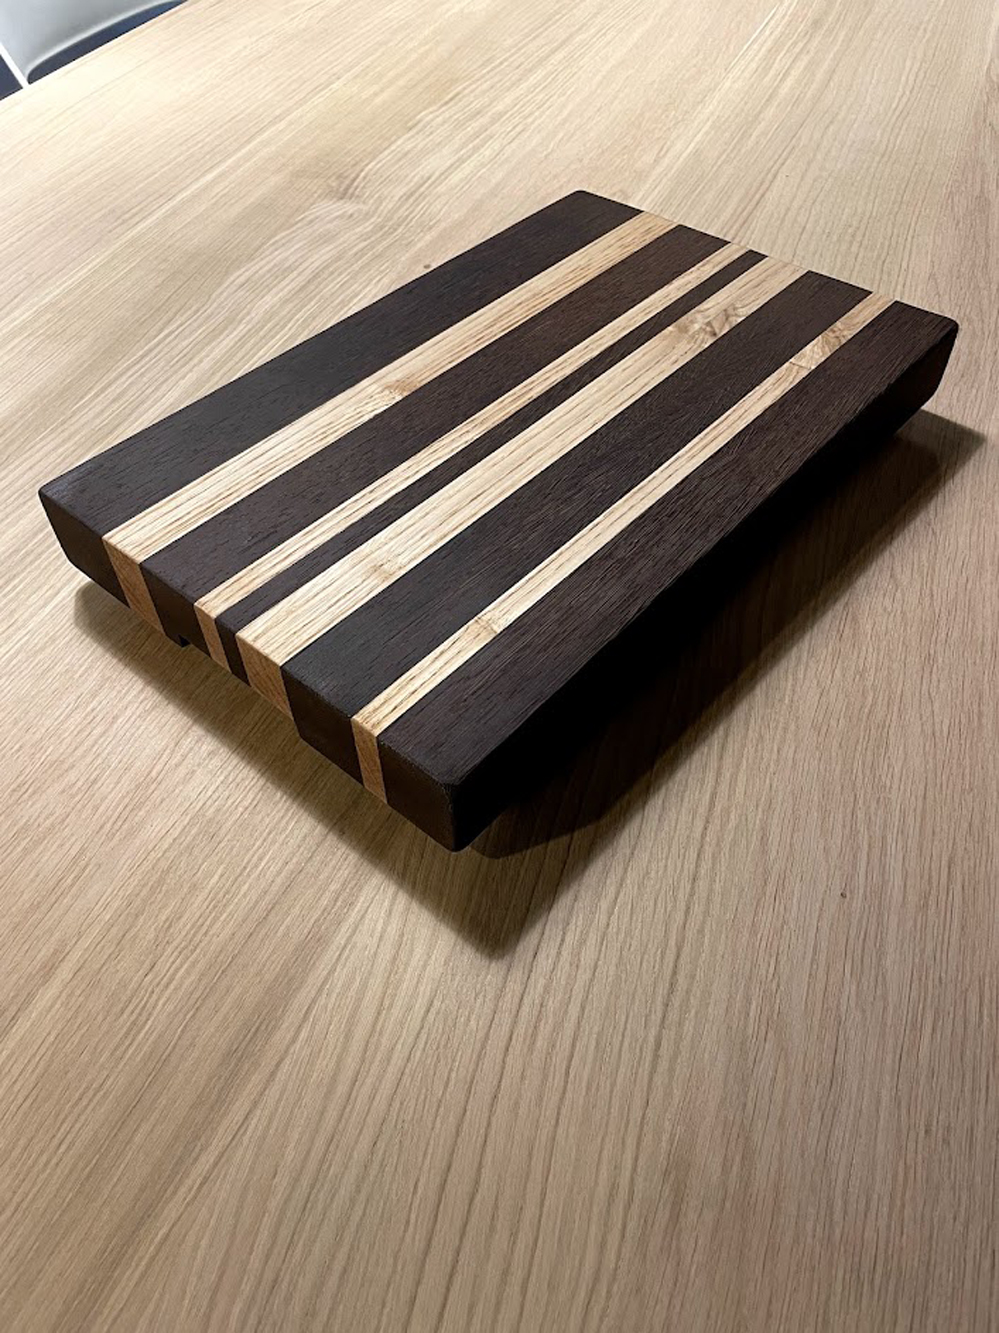 Tagliere da cucina LIGHT in legno con manico 15x25 cm, Vassoio